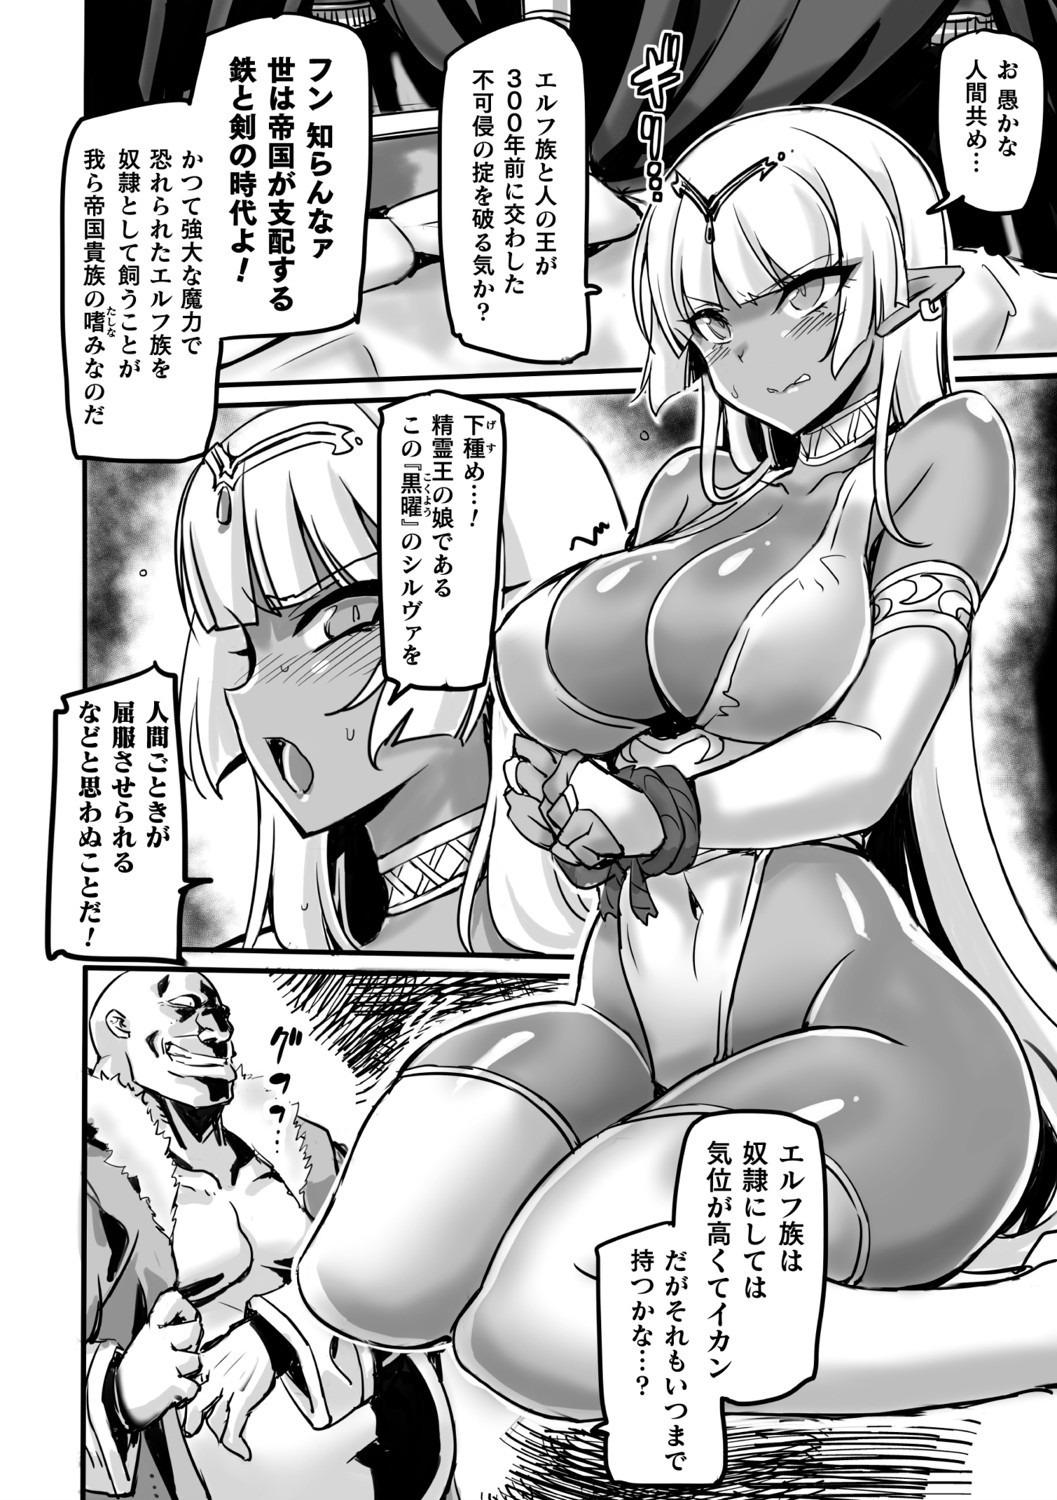 2D Comic Magazine Saimin Kyousei Wakan Ijirare Heroine Mesukoi Acme! Vol. 2 63